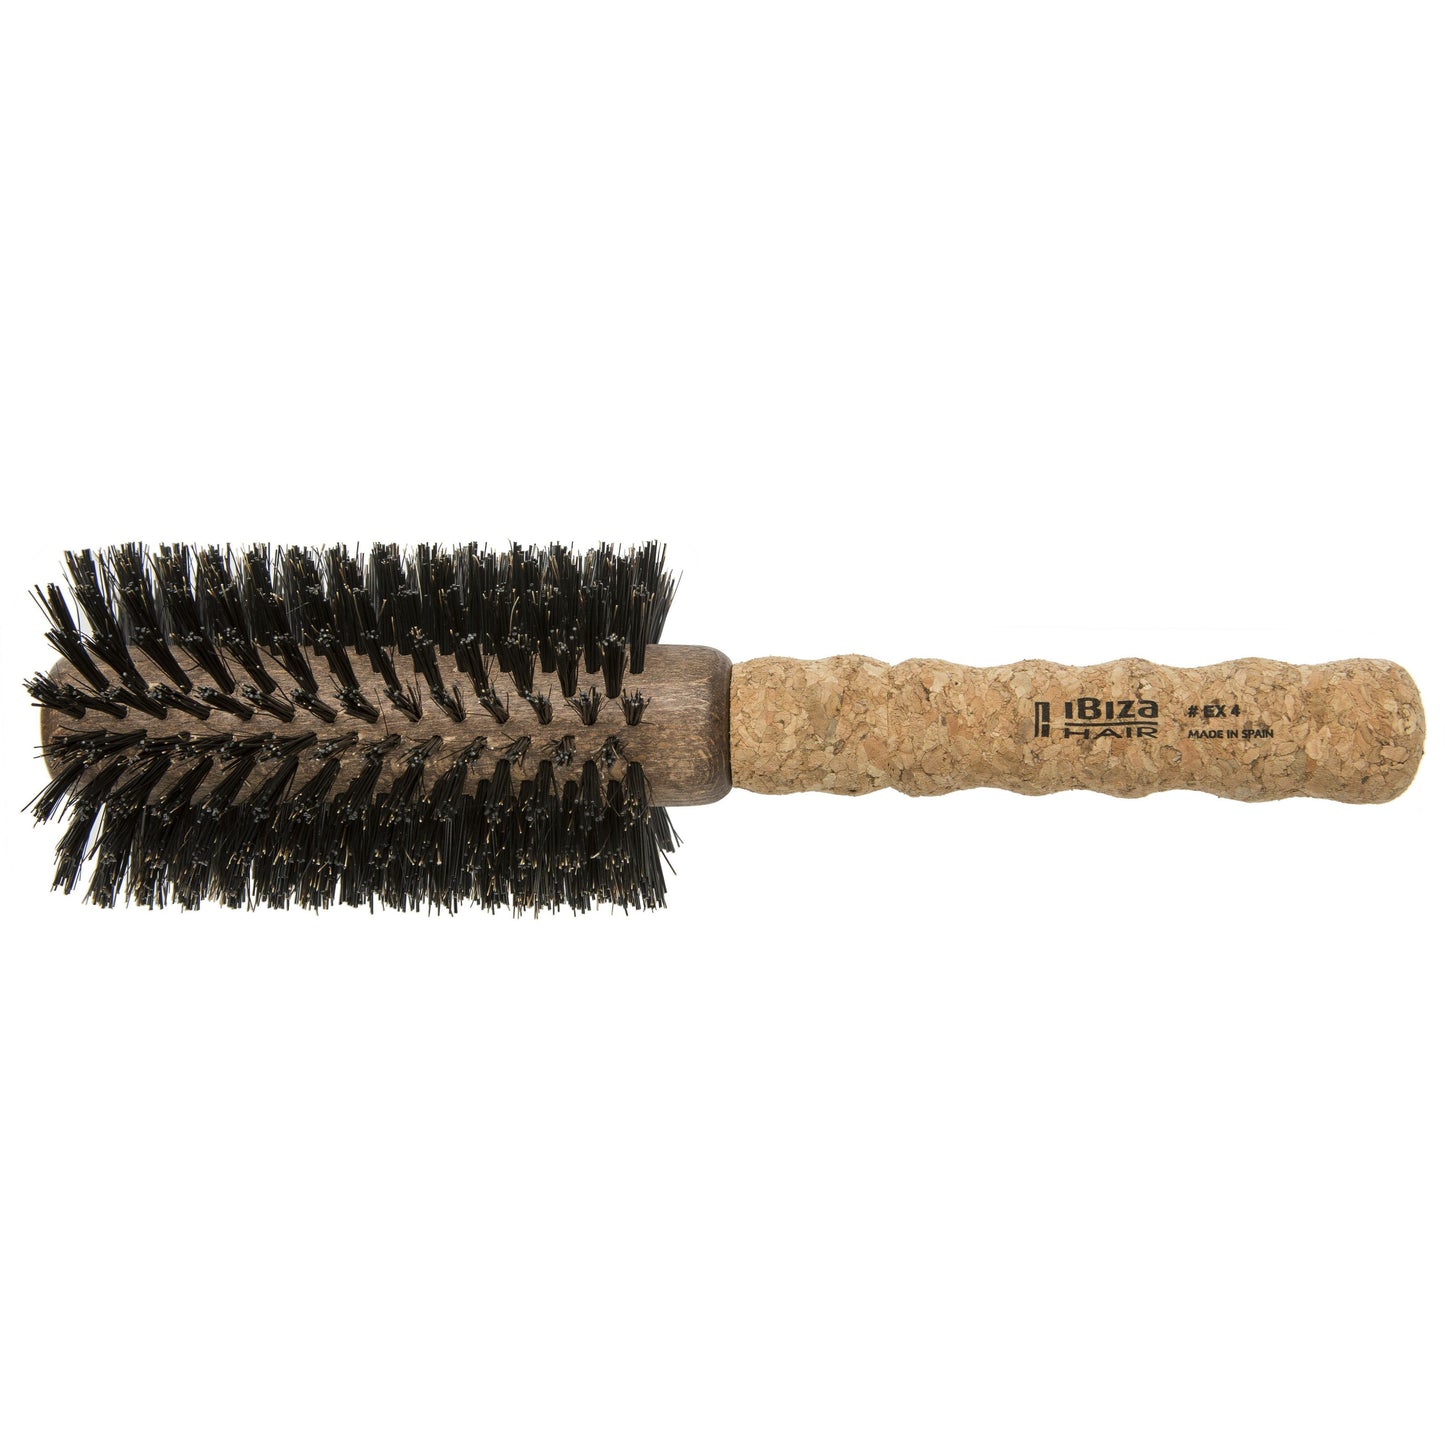 Ibiza Hair Brush EX4 Large 65mm Brushes Ibiza 